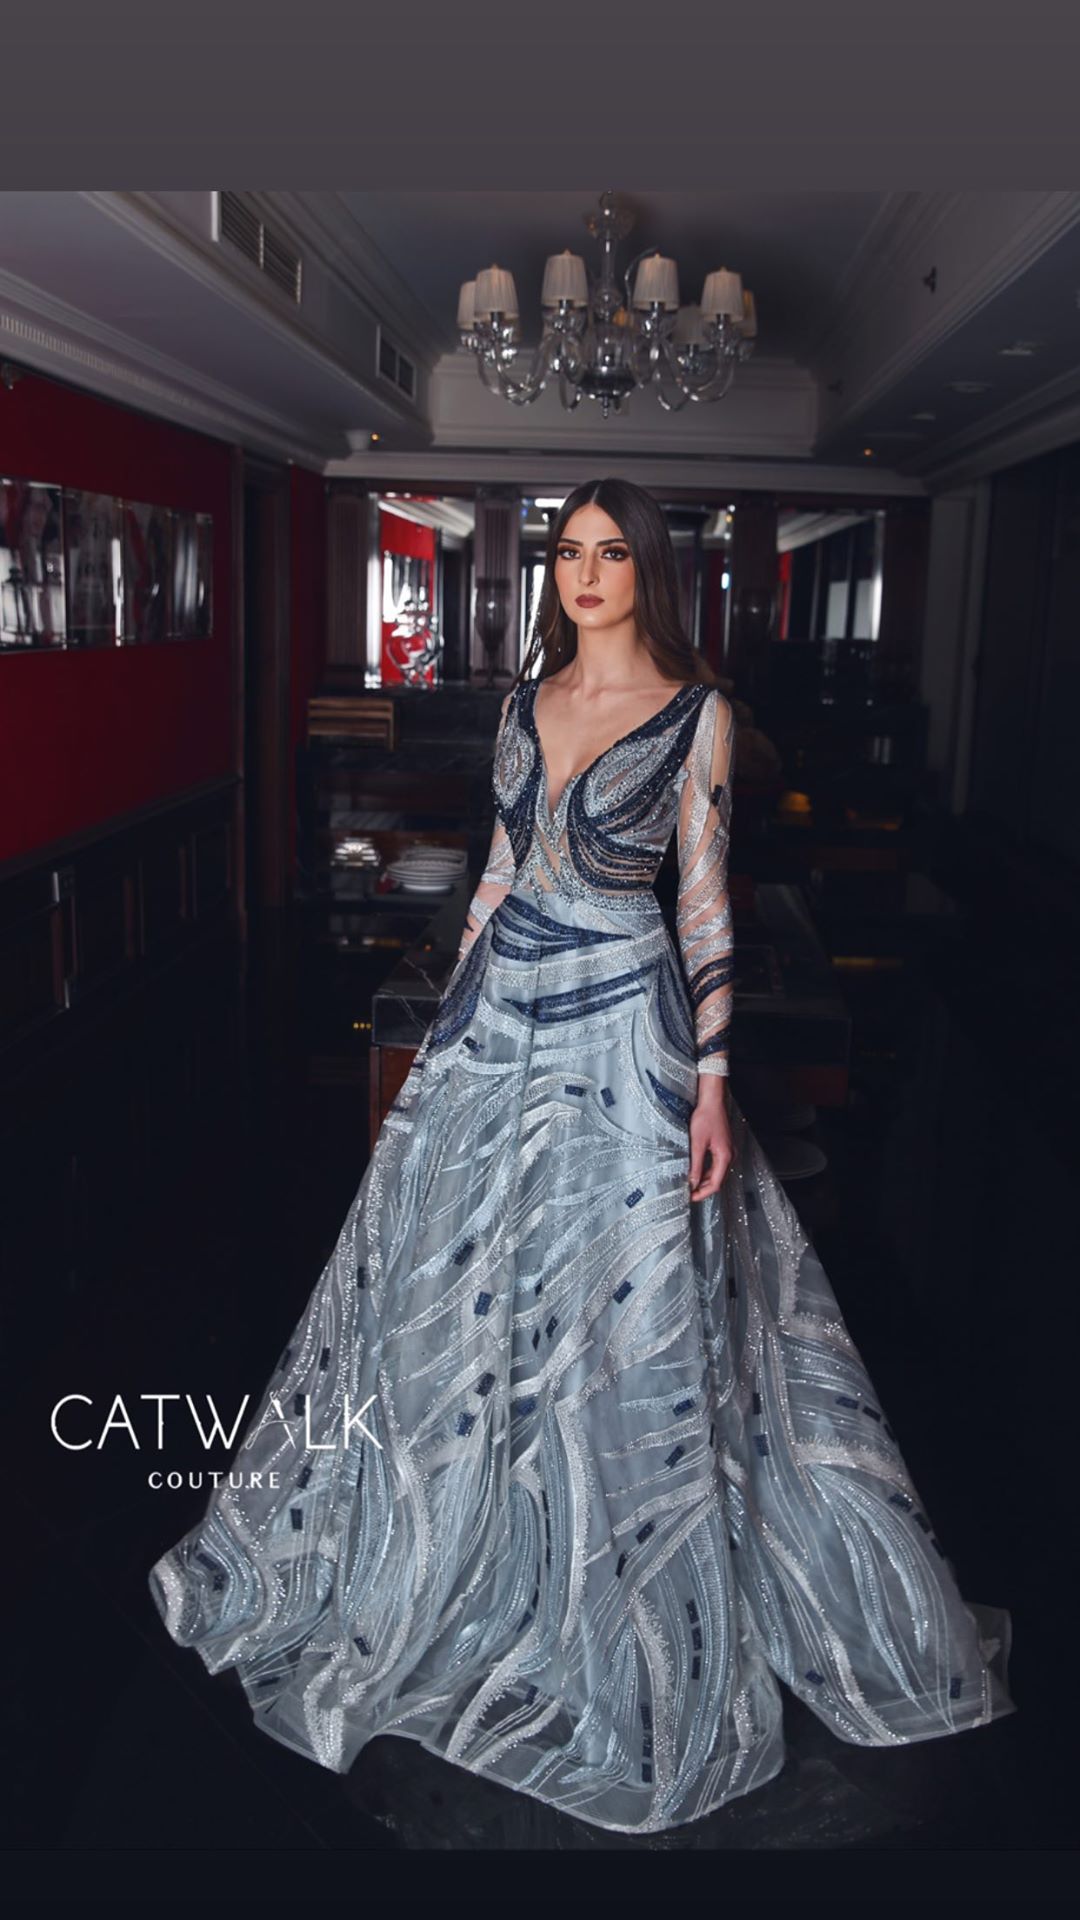 Вечерние платье catwalk 2021_2410